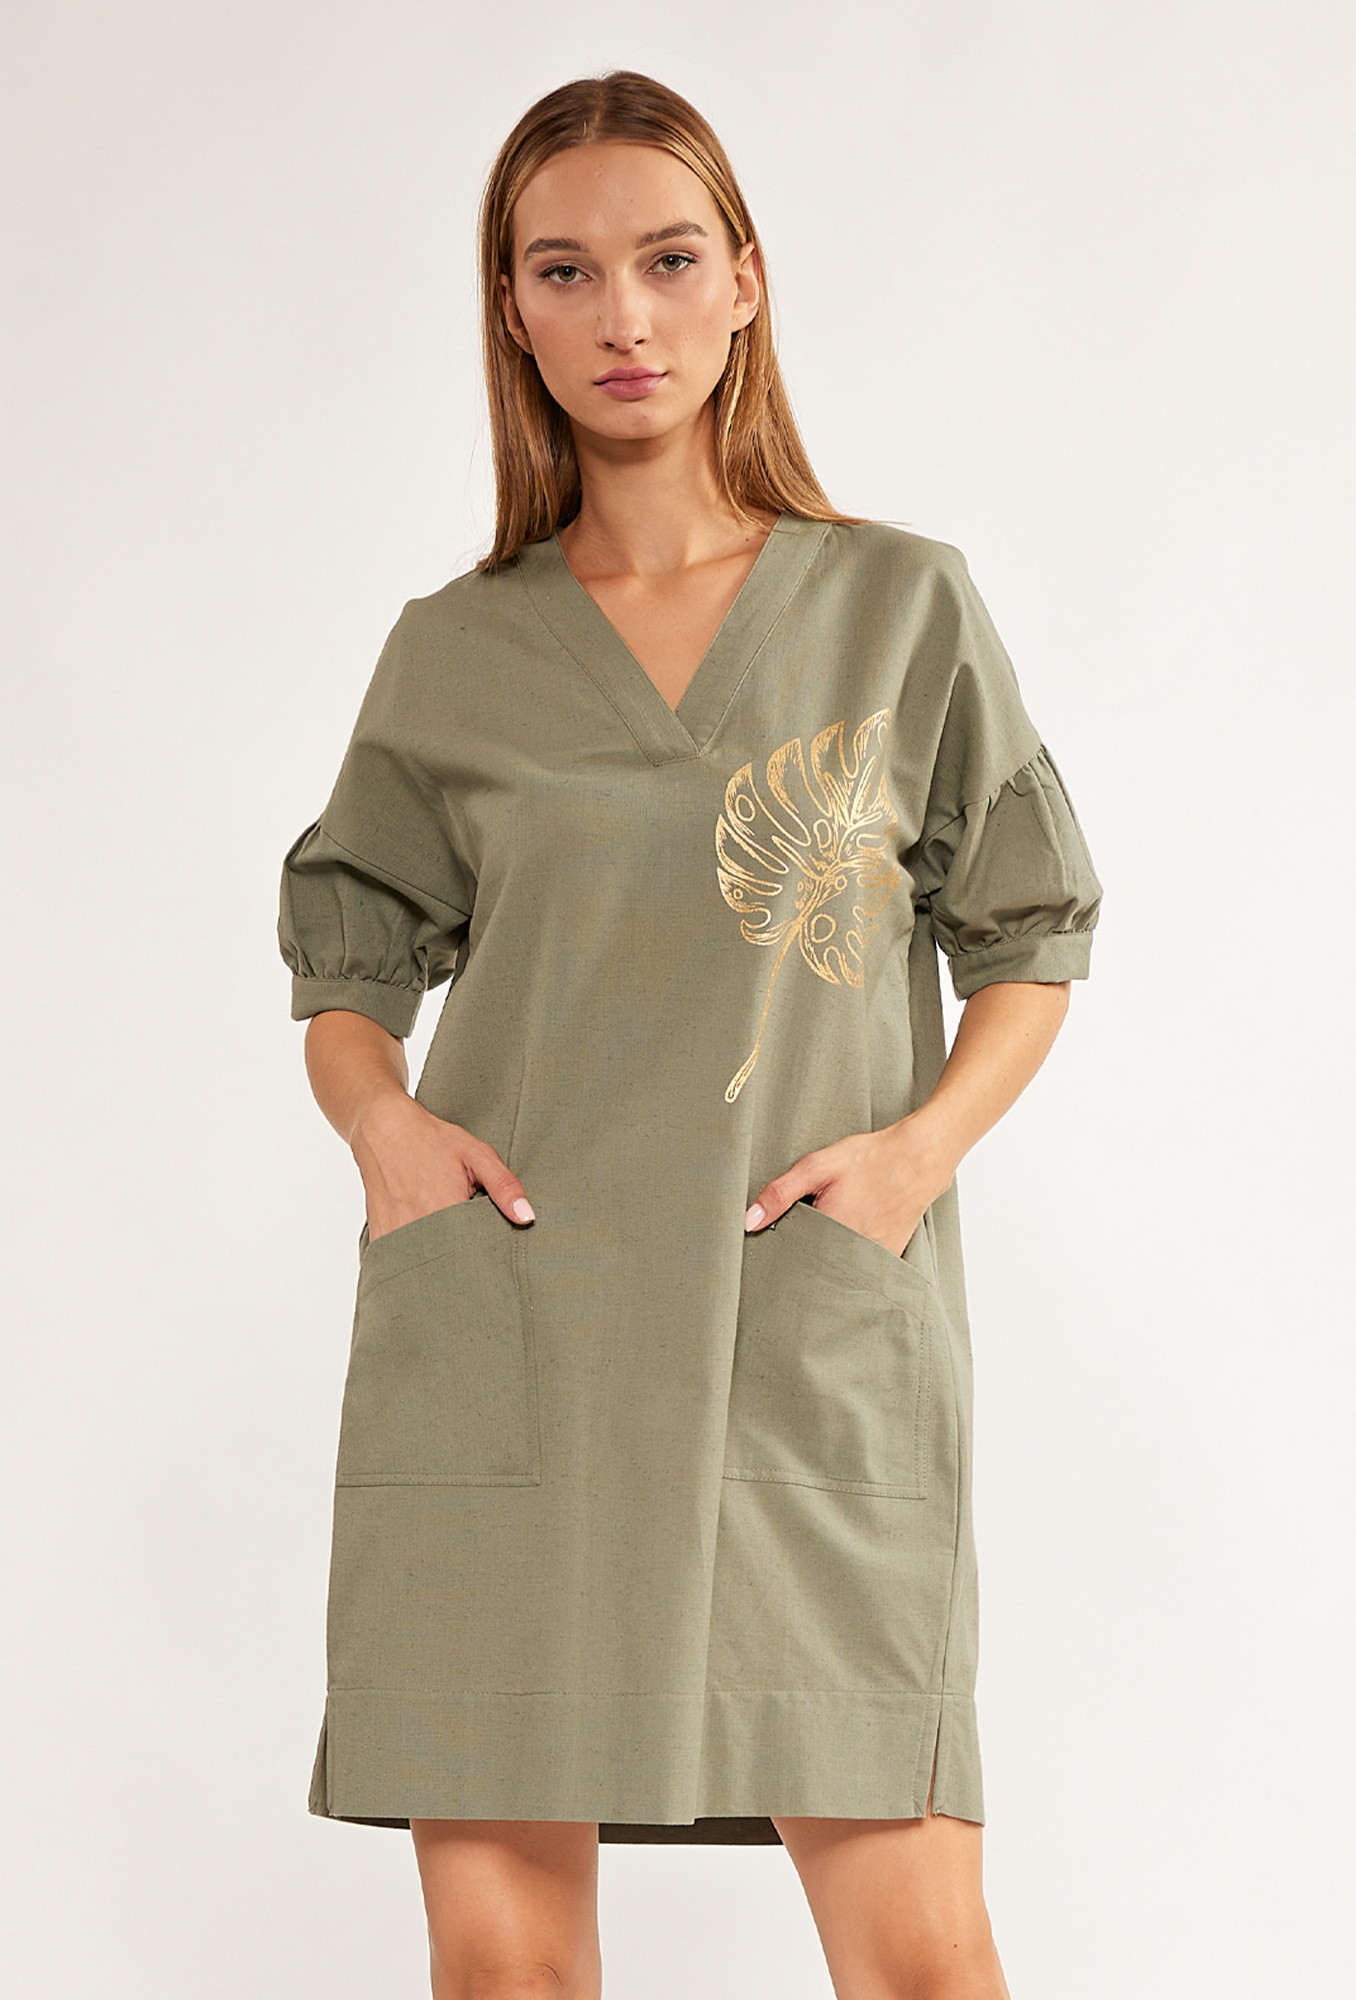 Monnari Šaty Mini šaty s ozdobným vzorem Bottle Green 44